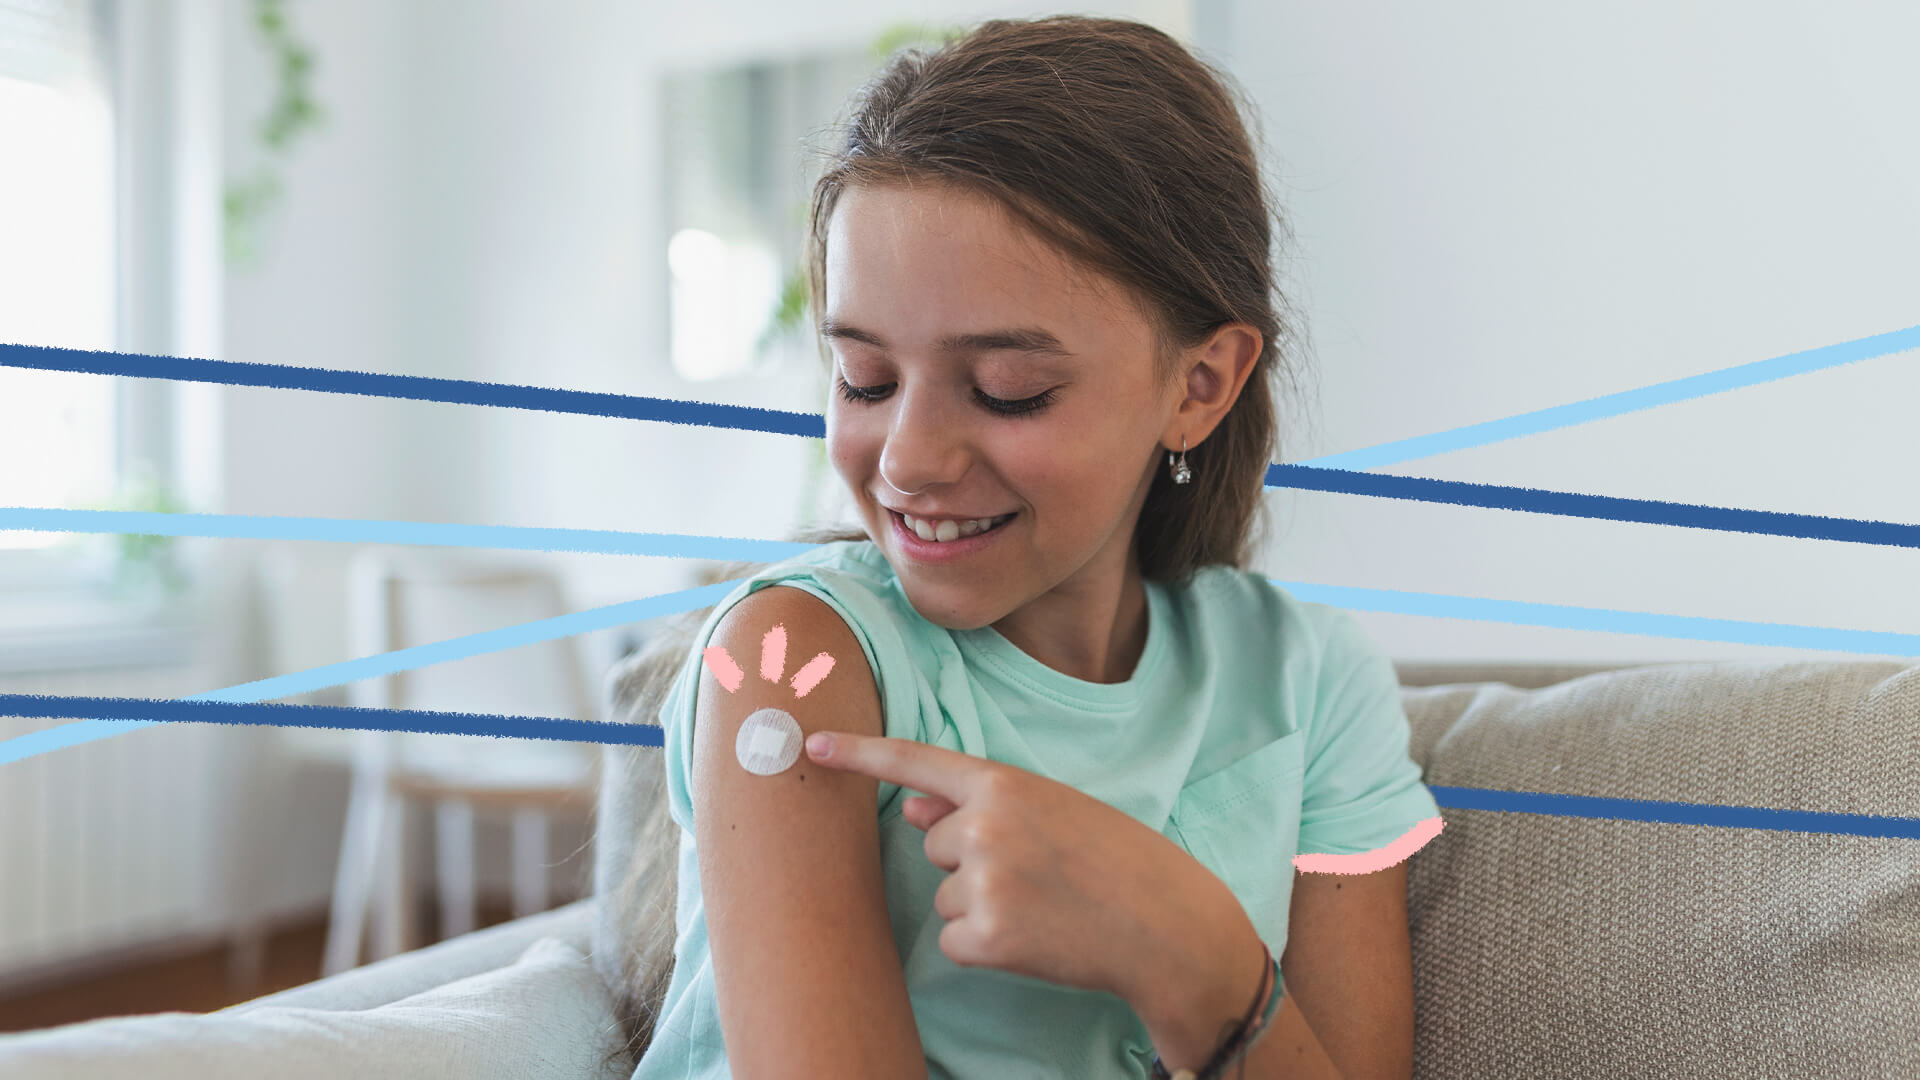 Guia de vacinas: na imagem, uma menina aponta para um curativo no braço após receber uma vacina. Ela tem pele clara, usa uma camiseta verde e sorri. A imagem possui intervenções de rabiscos coloridos.